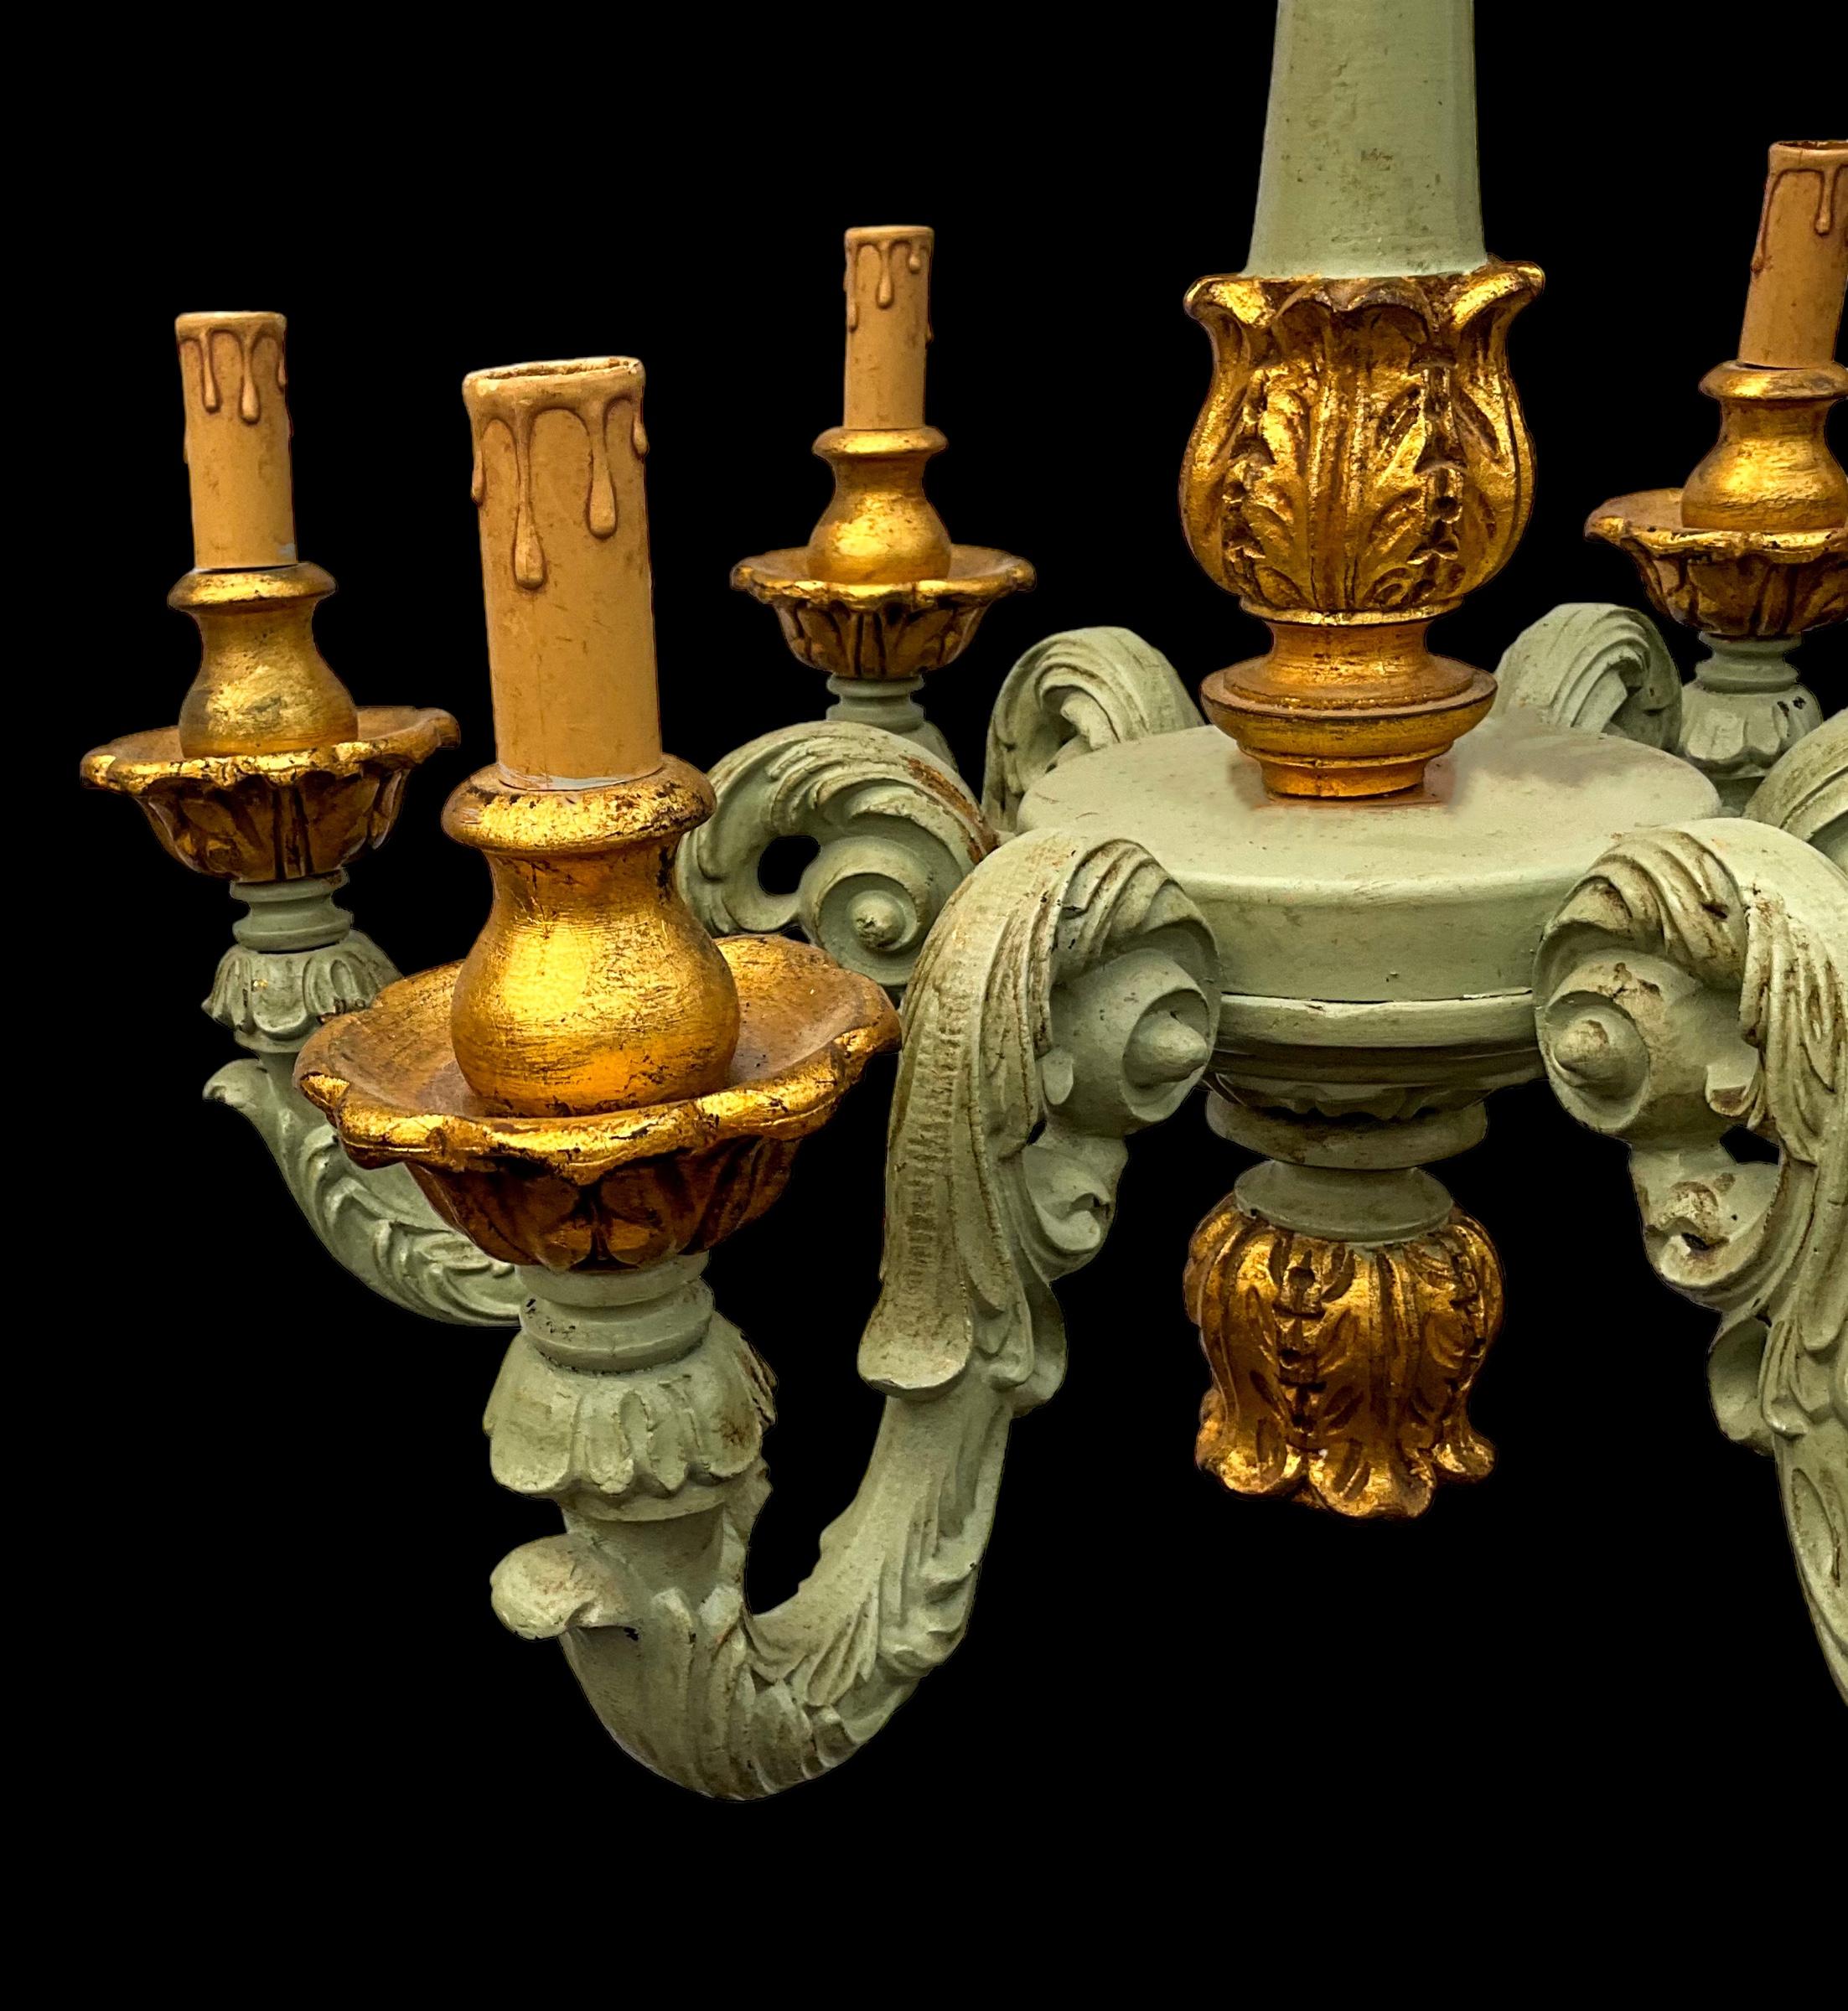 Dies ist ein italienischer geschnitzter und bemalter Kronleuchter mit vergoldeten Akzenten. Sie ist im Rokoko-Stil gehalten und nicht beschriftet. Das Stück hat sechs Arme.